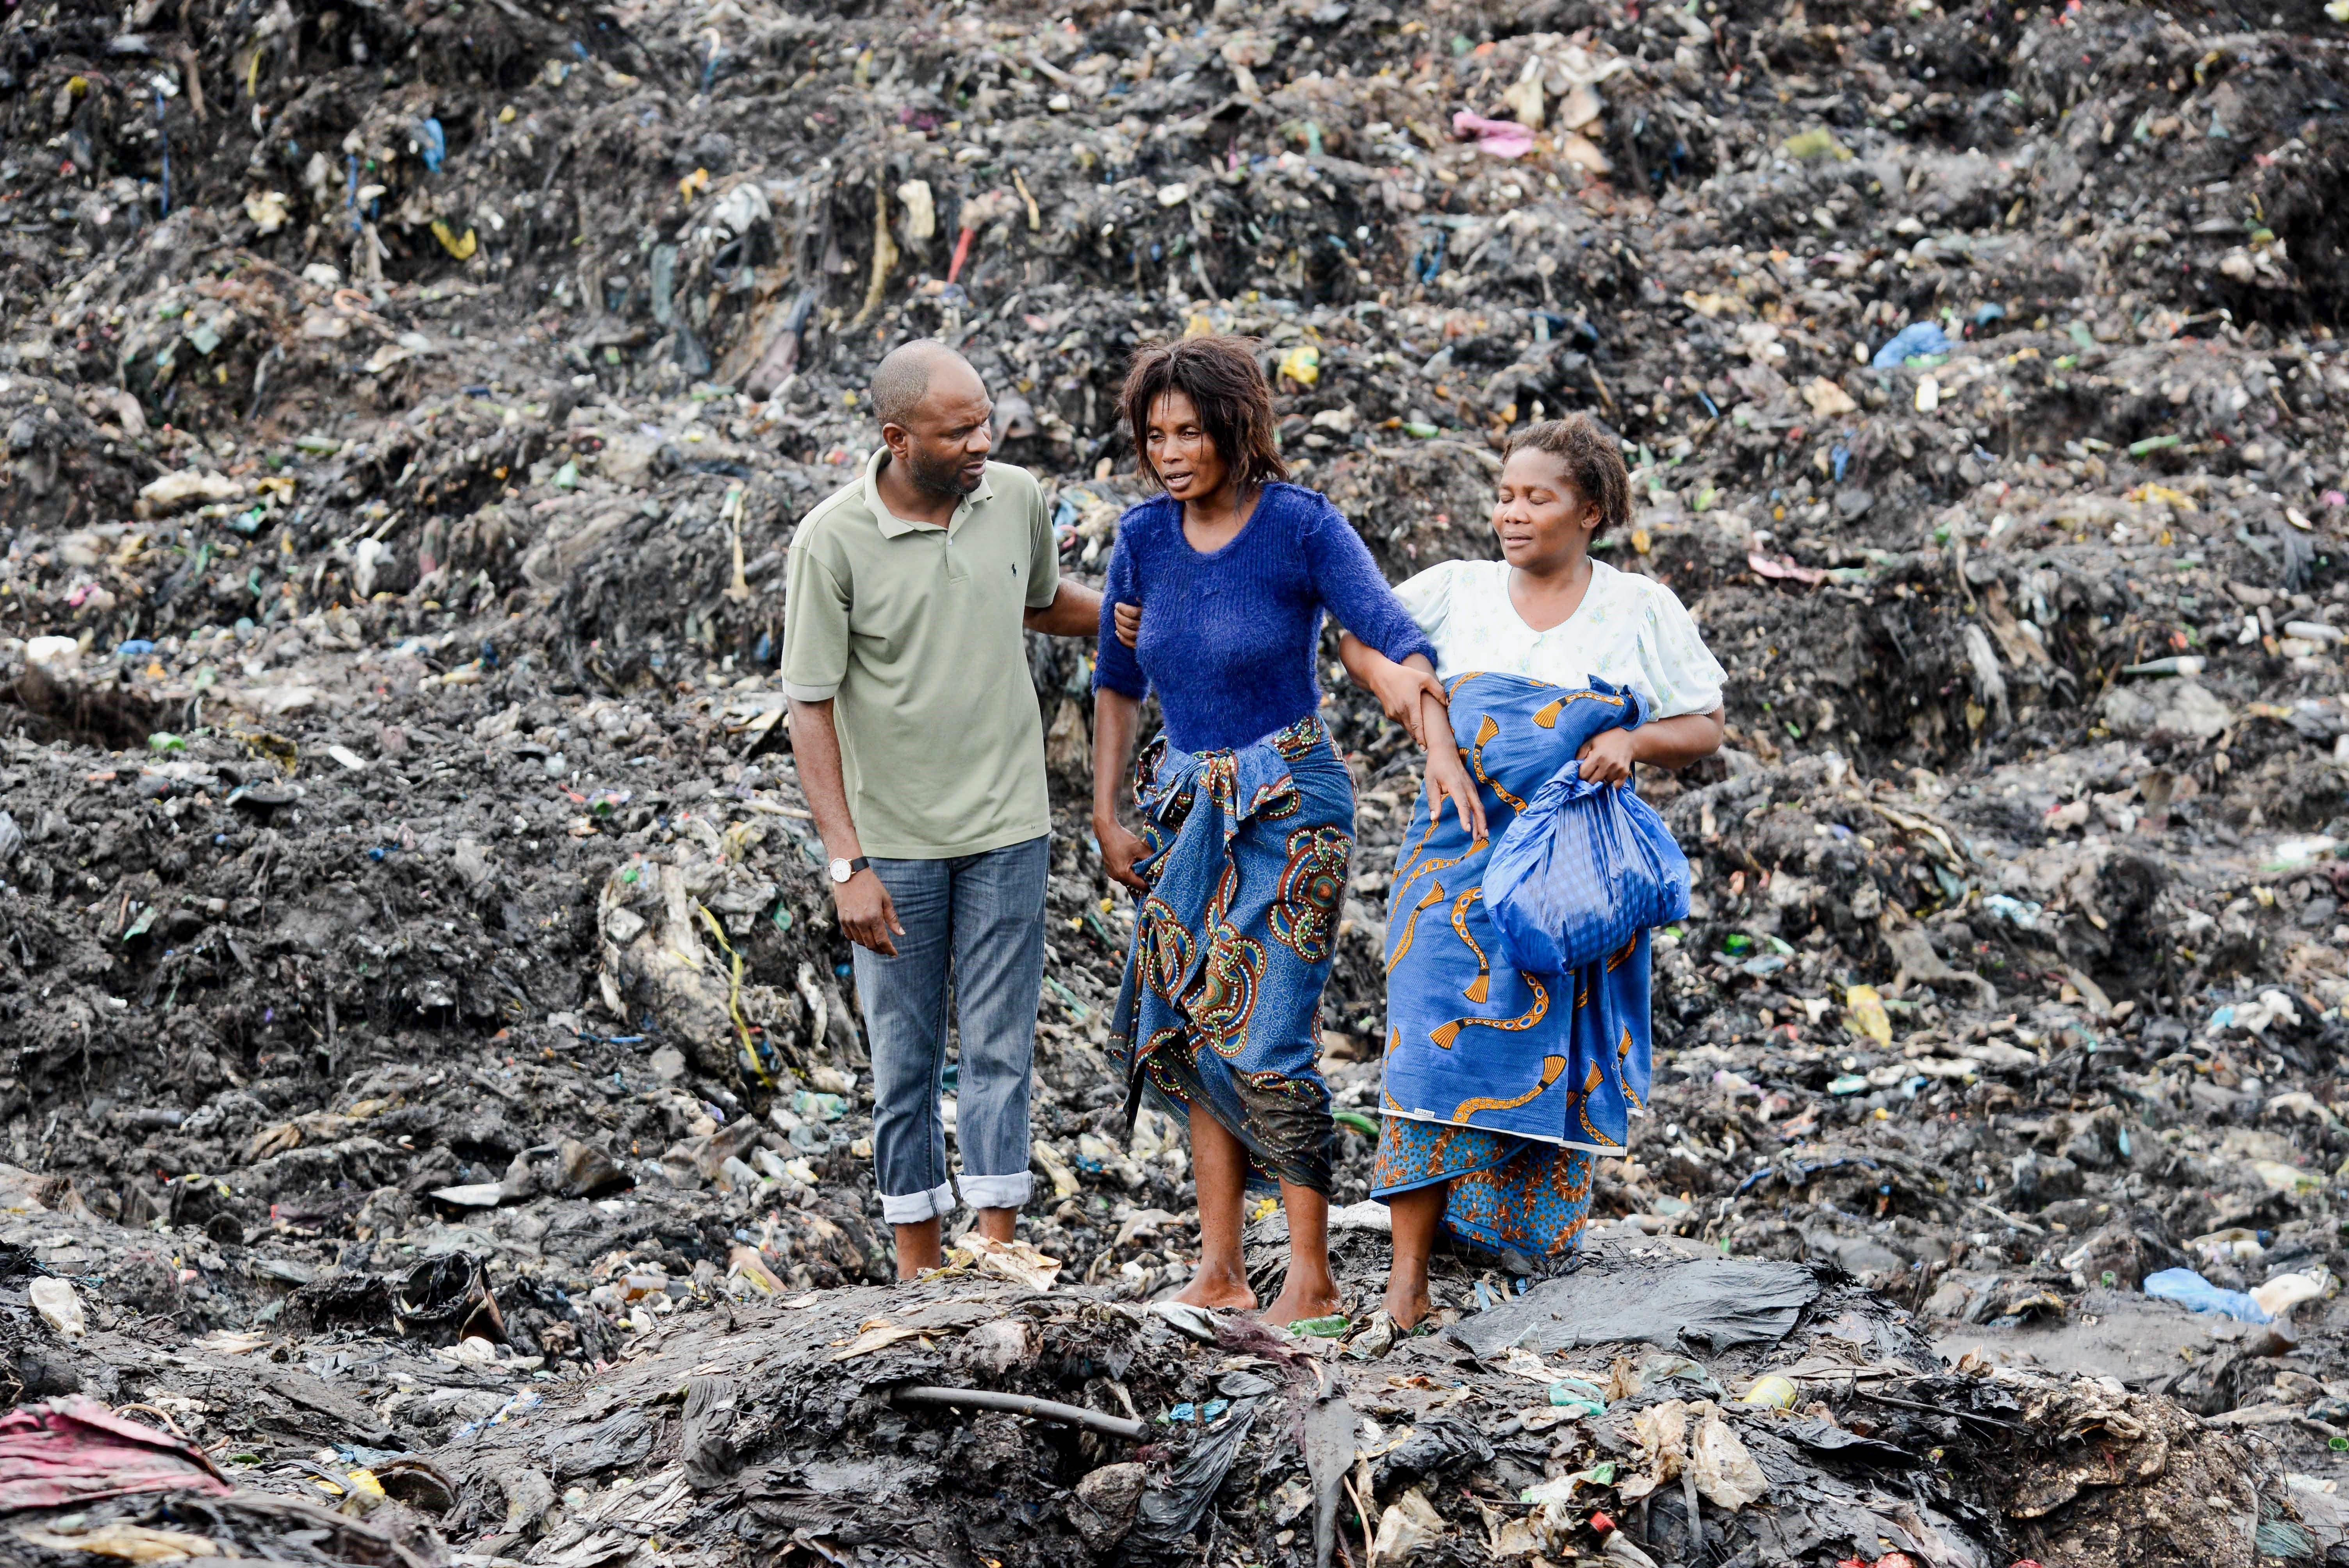 Mueren 17 personas en Mozambique sepultadas por un alud de basura